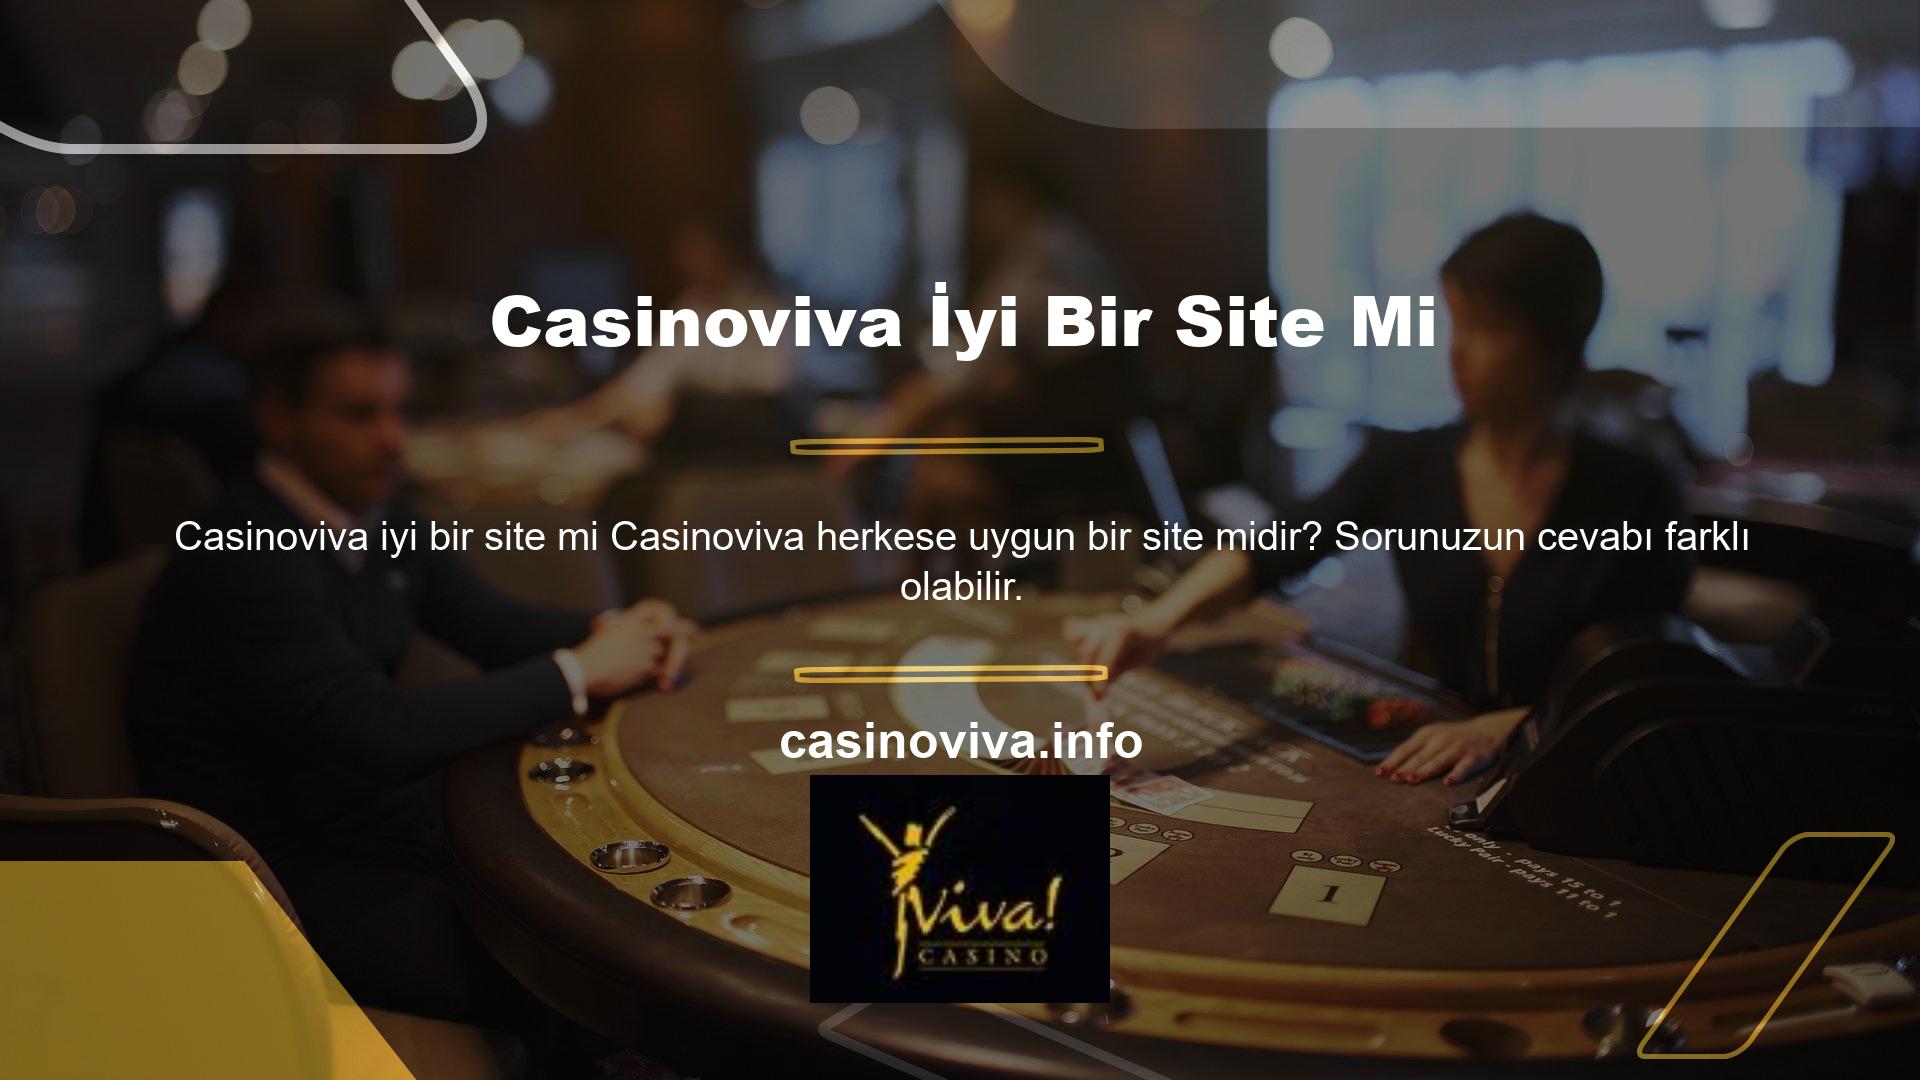 Yasadışı Casinoviva siteleri iyi sitelerdir, ancak Casinoviva siteleri genel olarak iyi siteler, güvenilir siteler vb